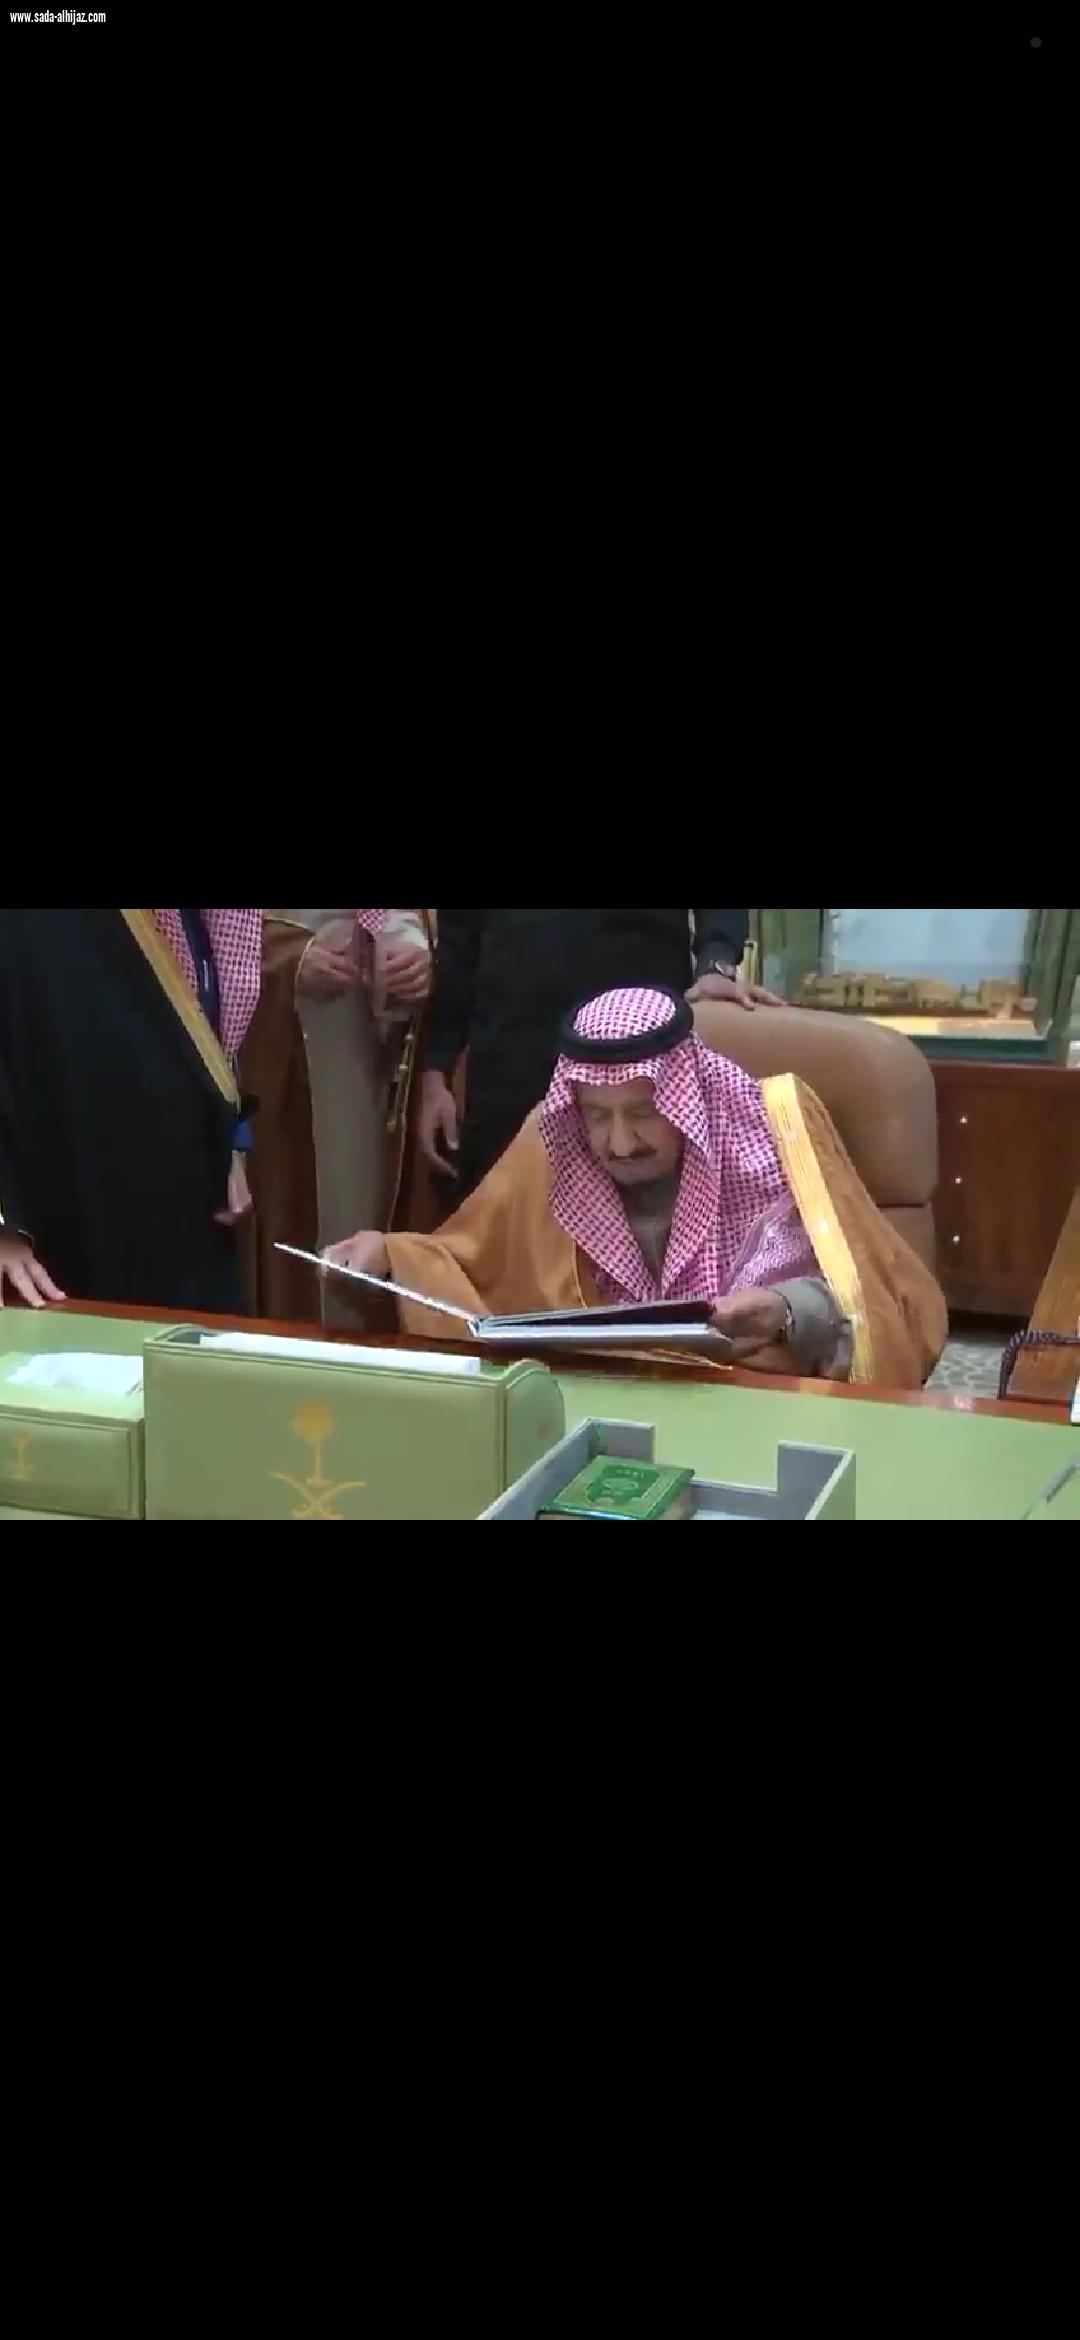 الملك سلمان يزور مكتبه بالاماره السابق